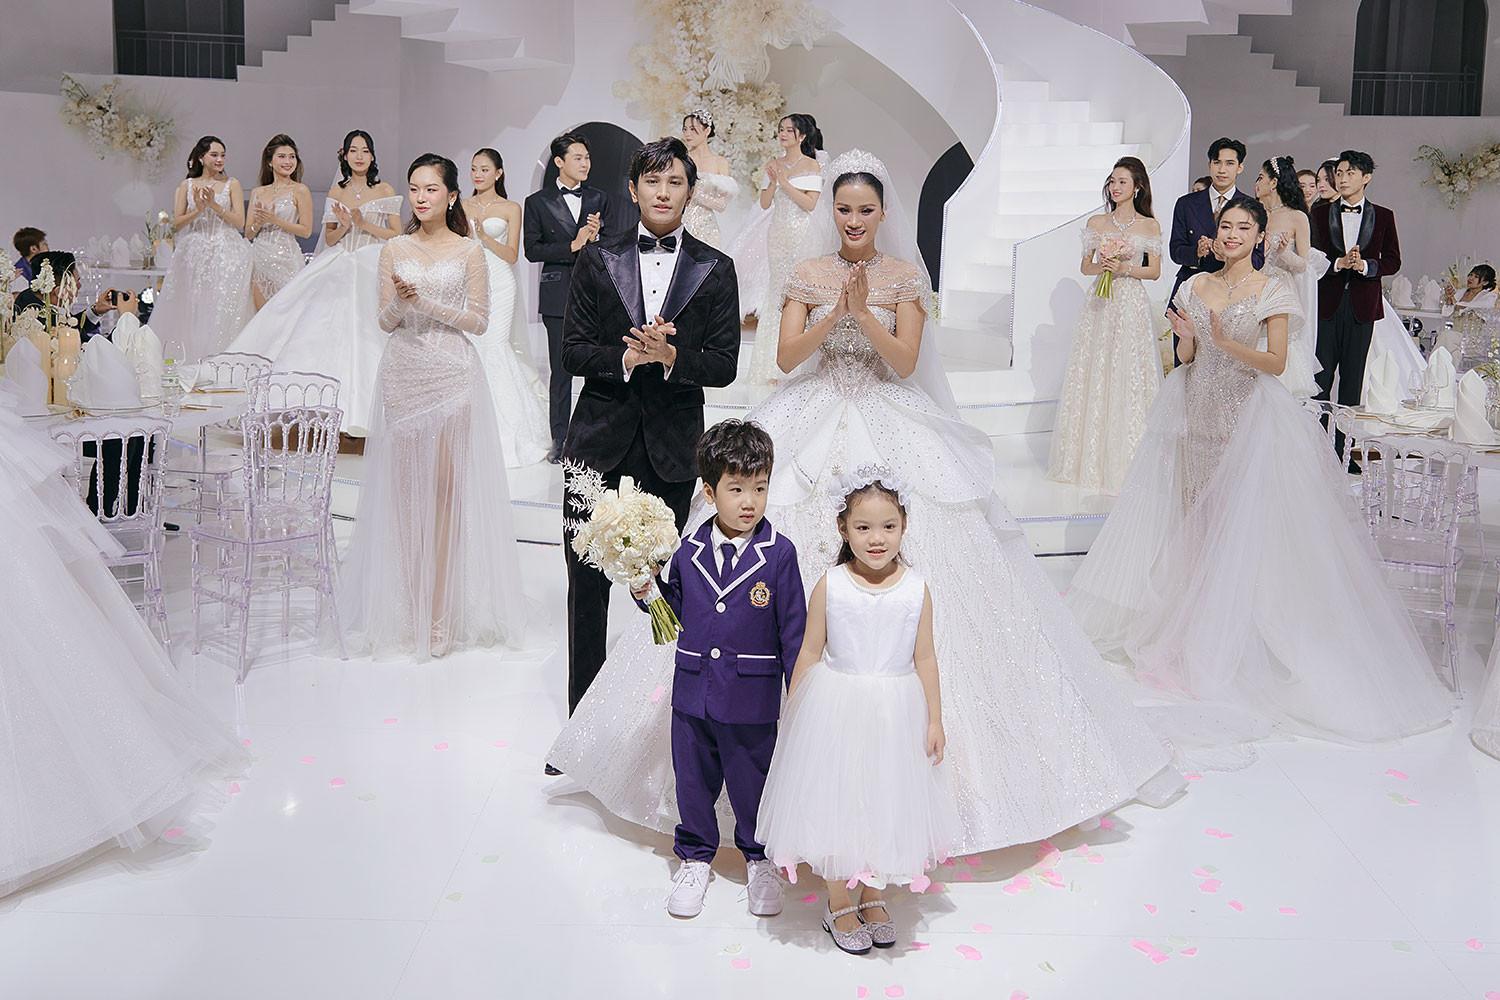 Á hậu Hương Ly được trao nhẫn cưới trên sàn diễn thời trang-2